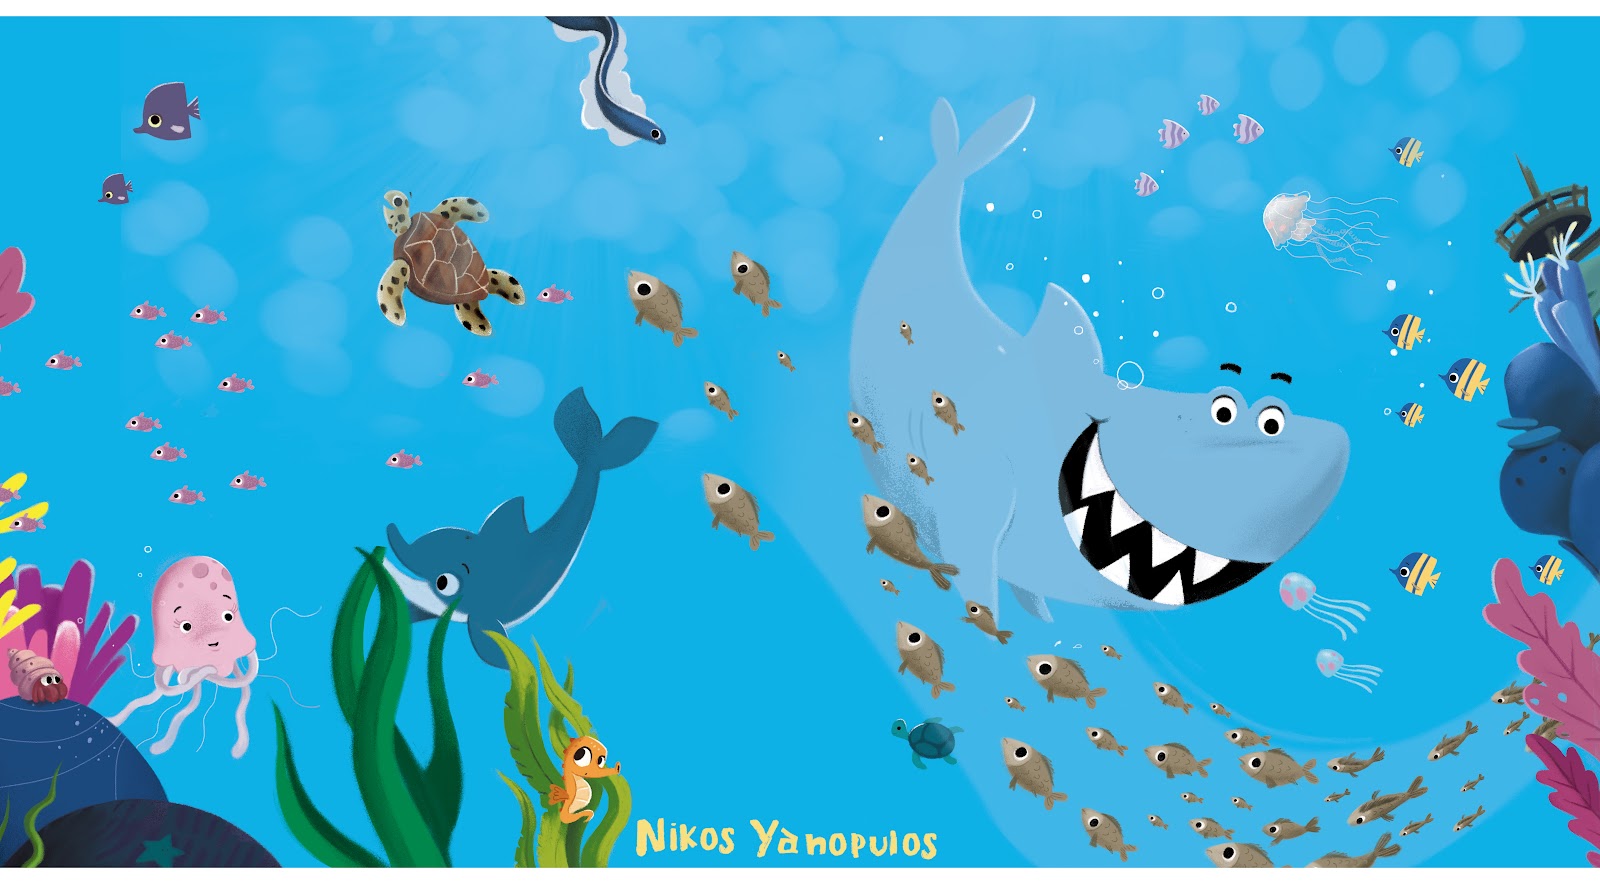 Το ιστολόγιο του συγγραφέα & εικονογράφου παιδικής λογοτεχνίας, Νίκου Γιαννόπουλου